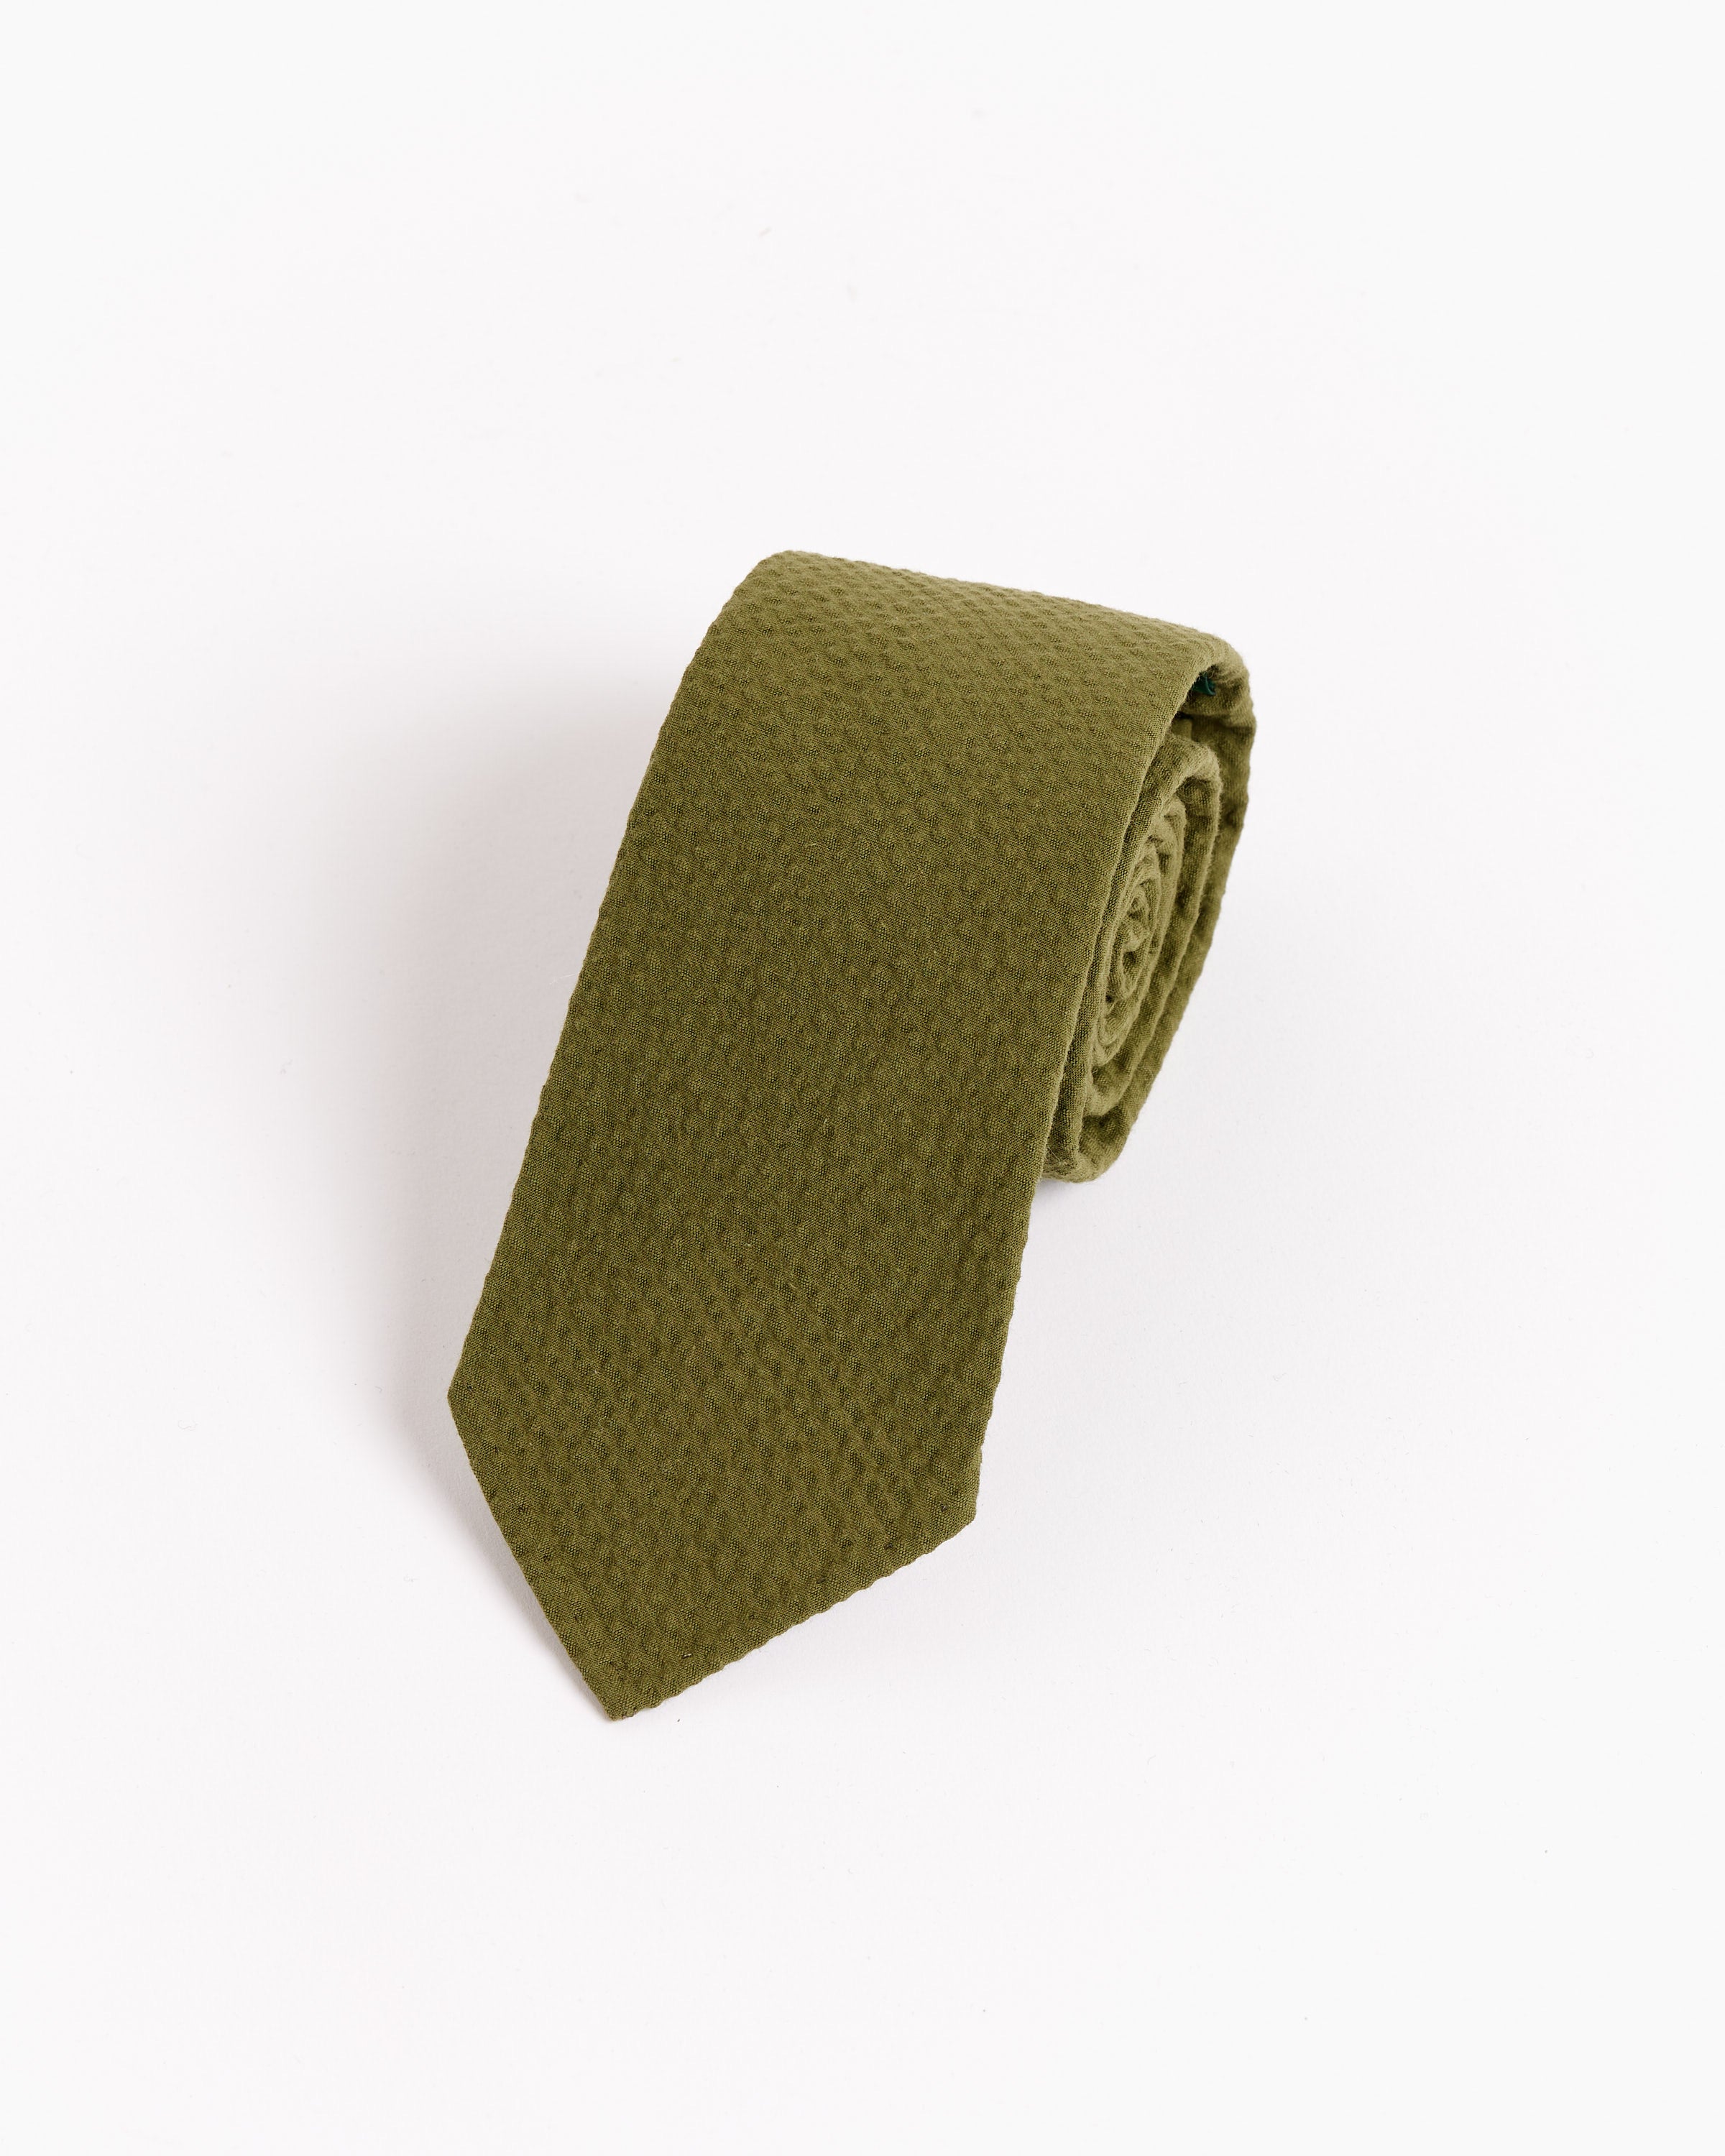 SMOCK x Gitman Vintage Tie in Seersucker in Pesto